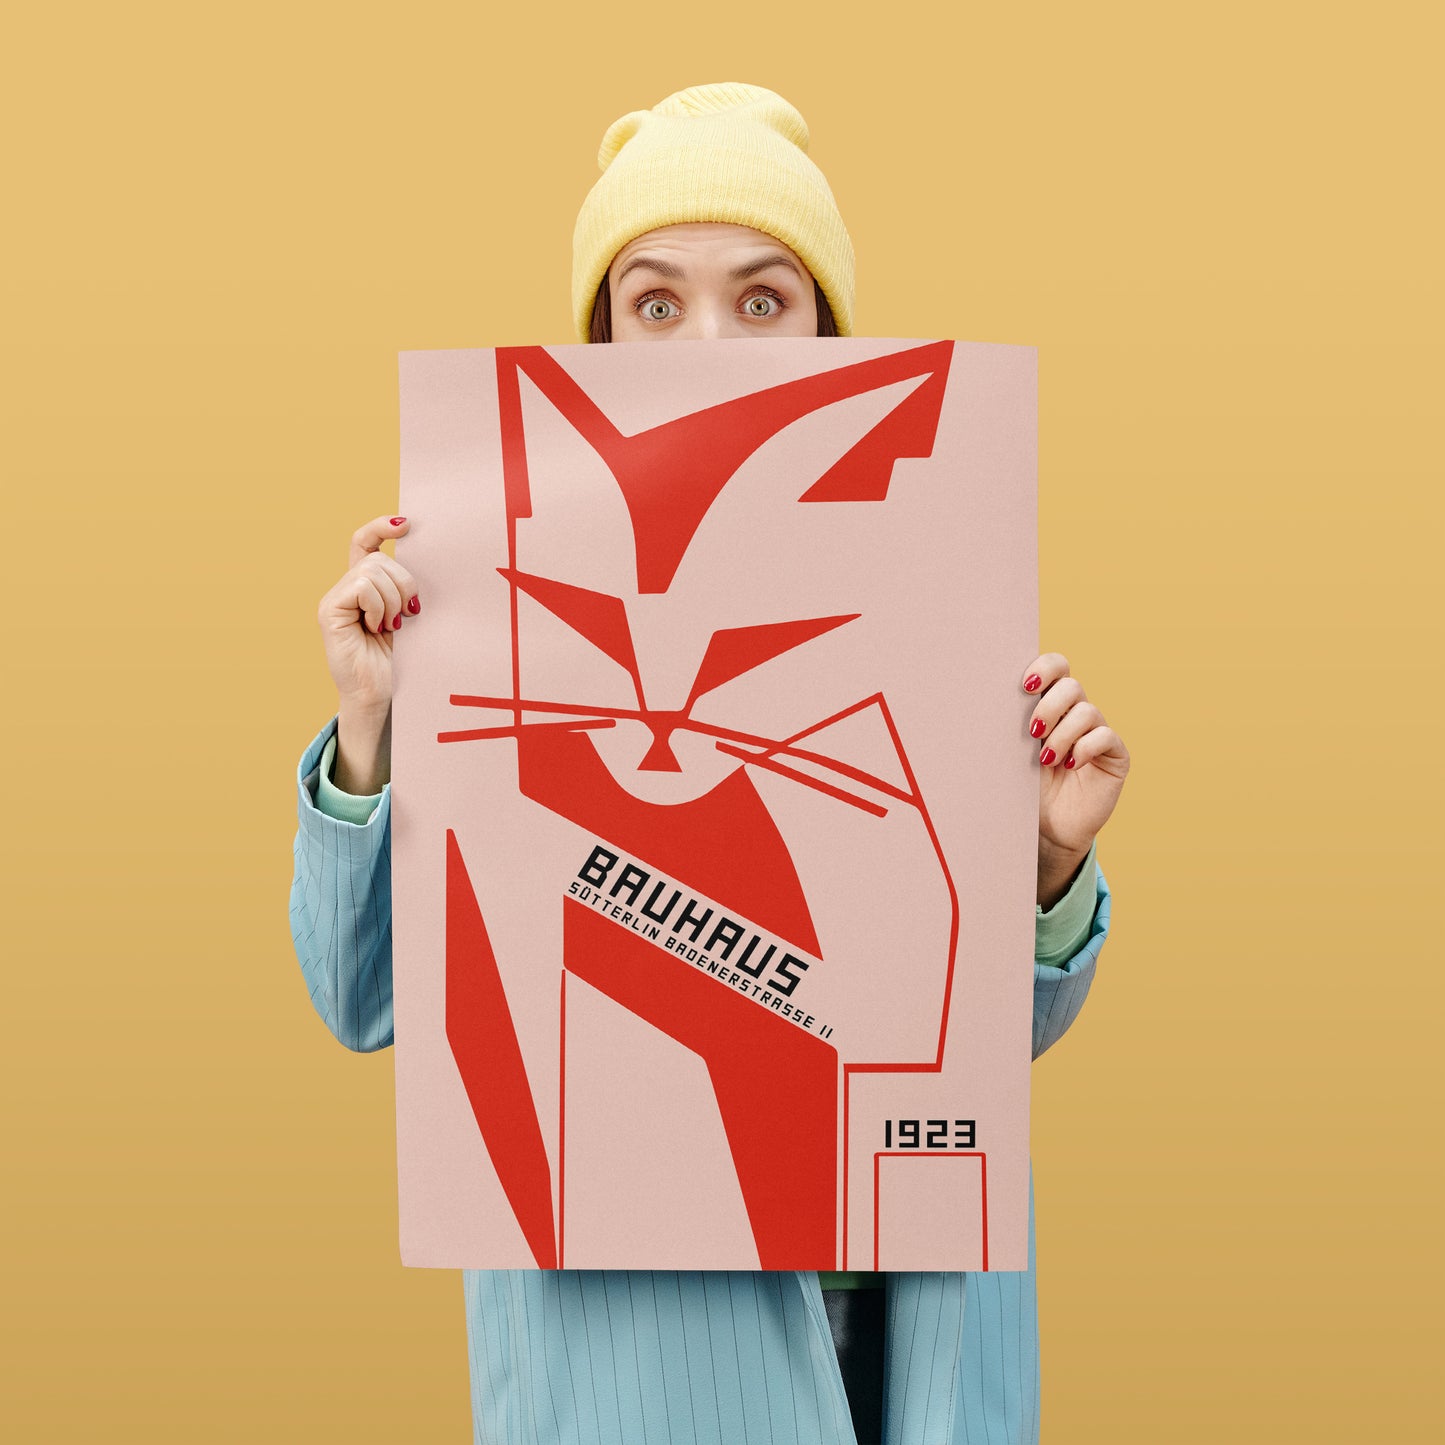 Red Cat Bauhaus Poster